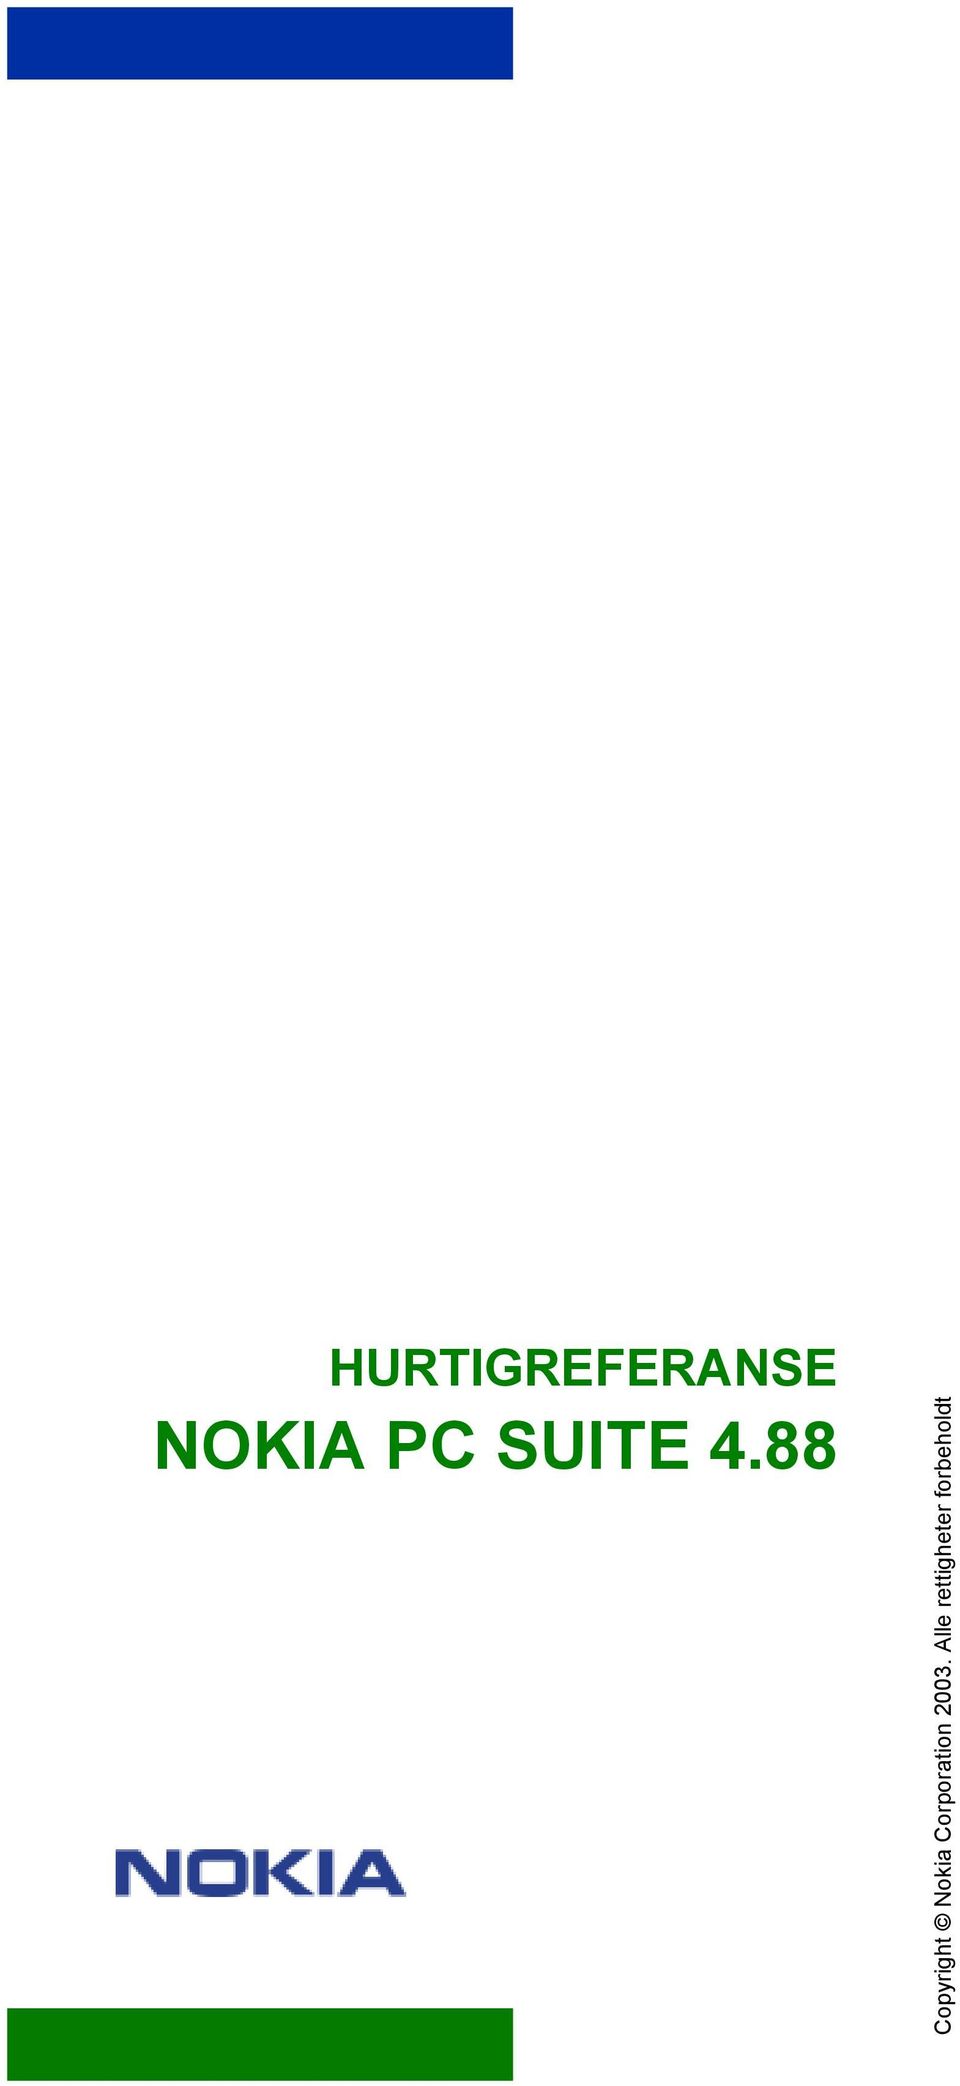 88 Copyright Nokia